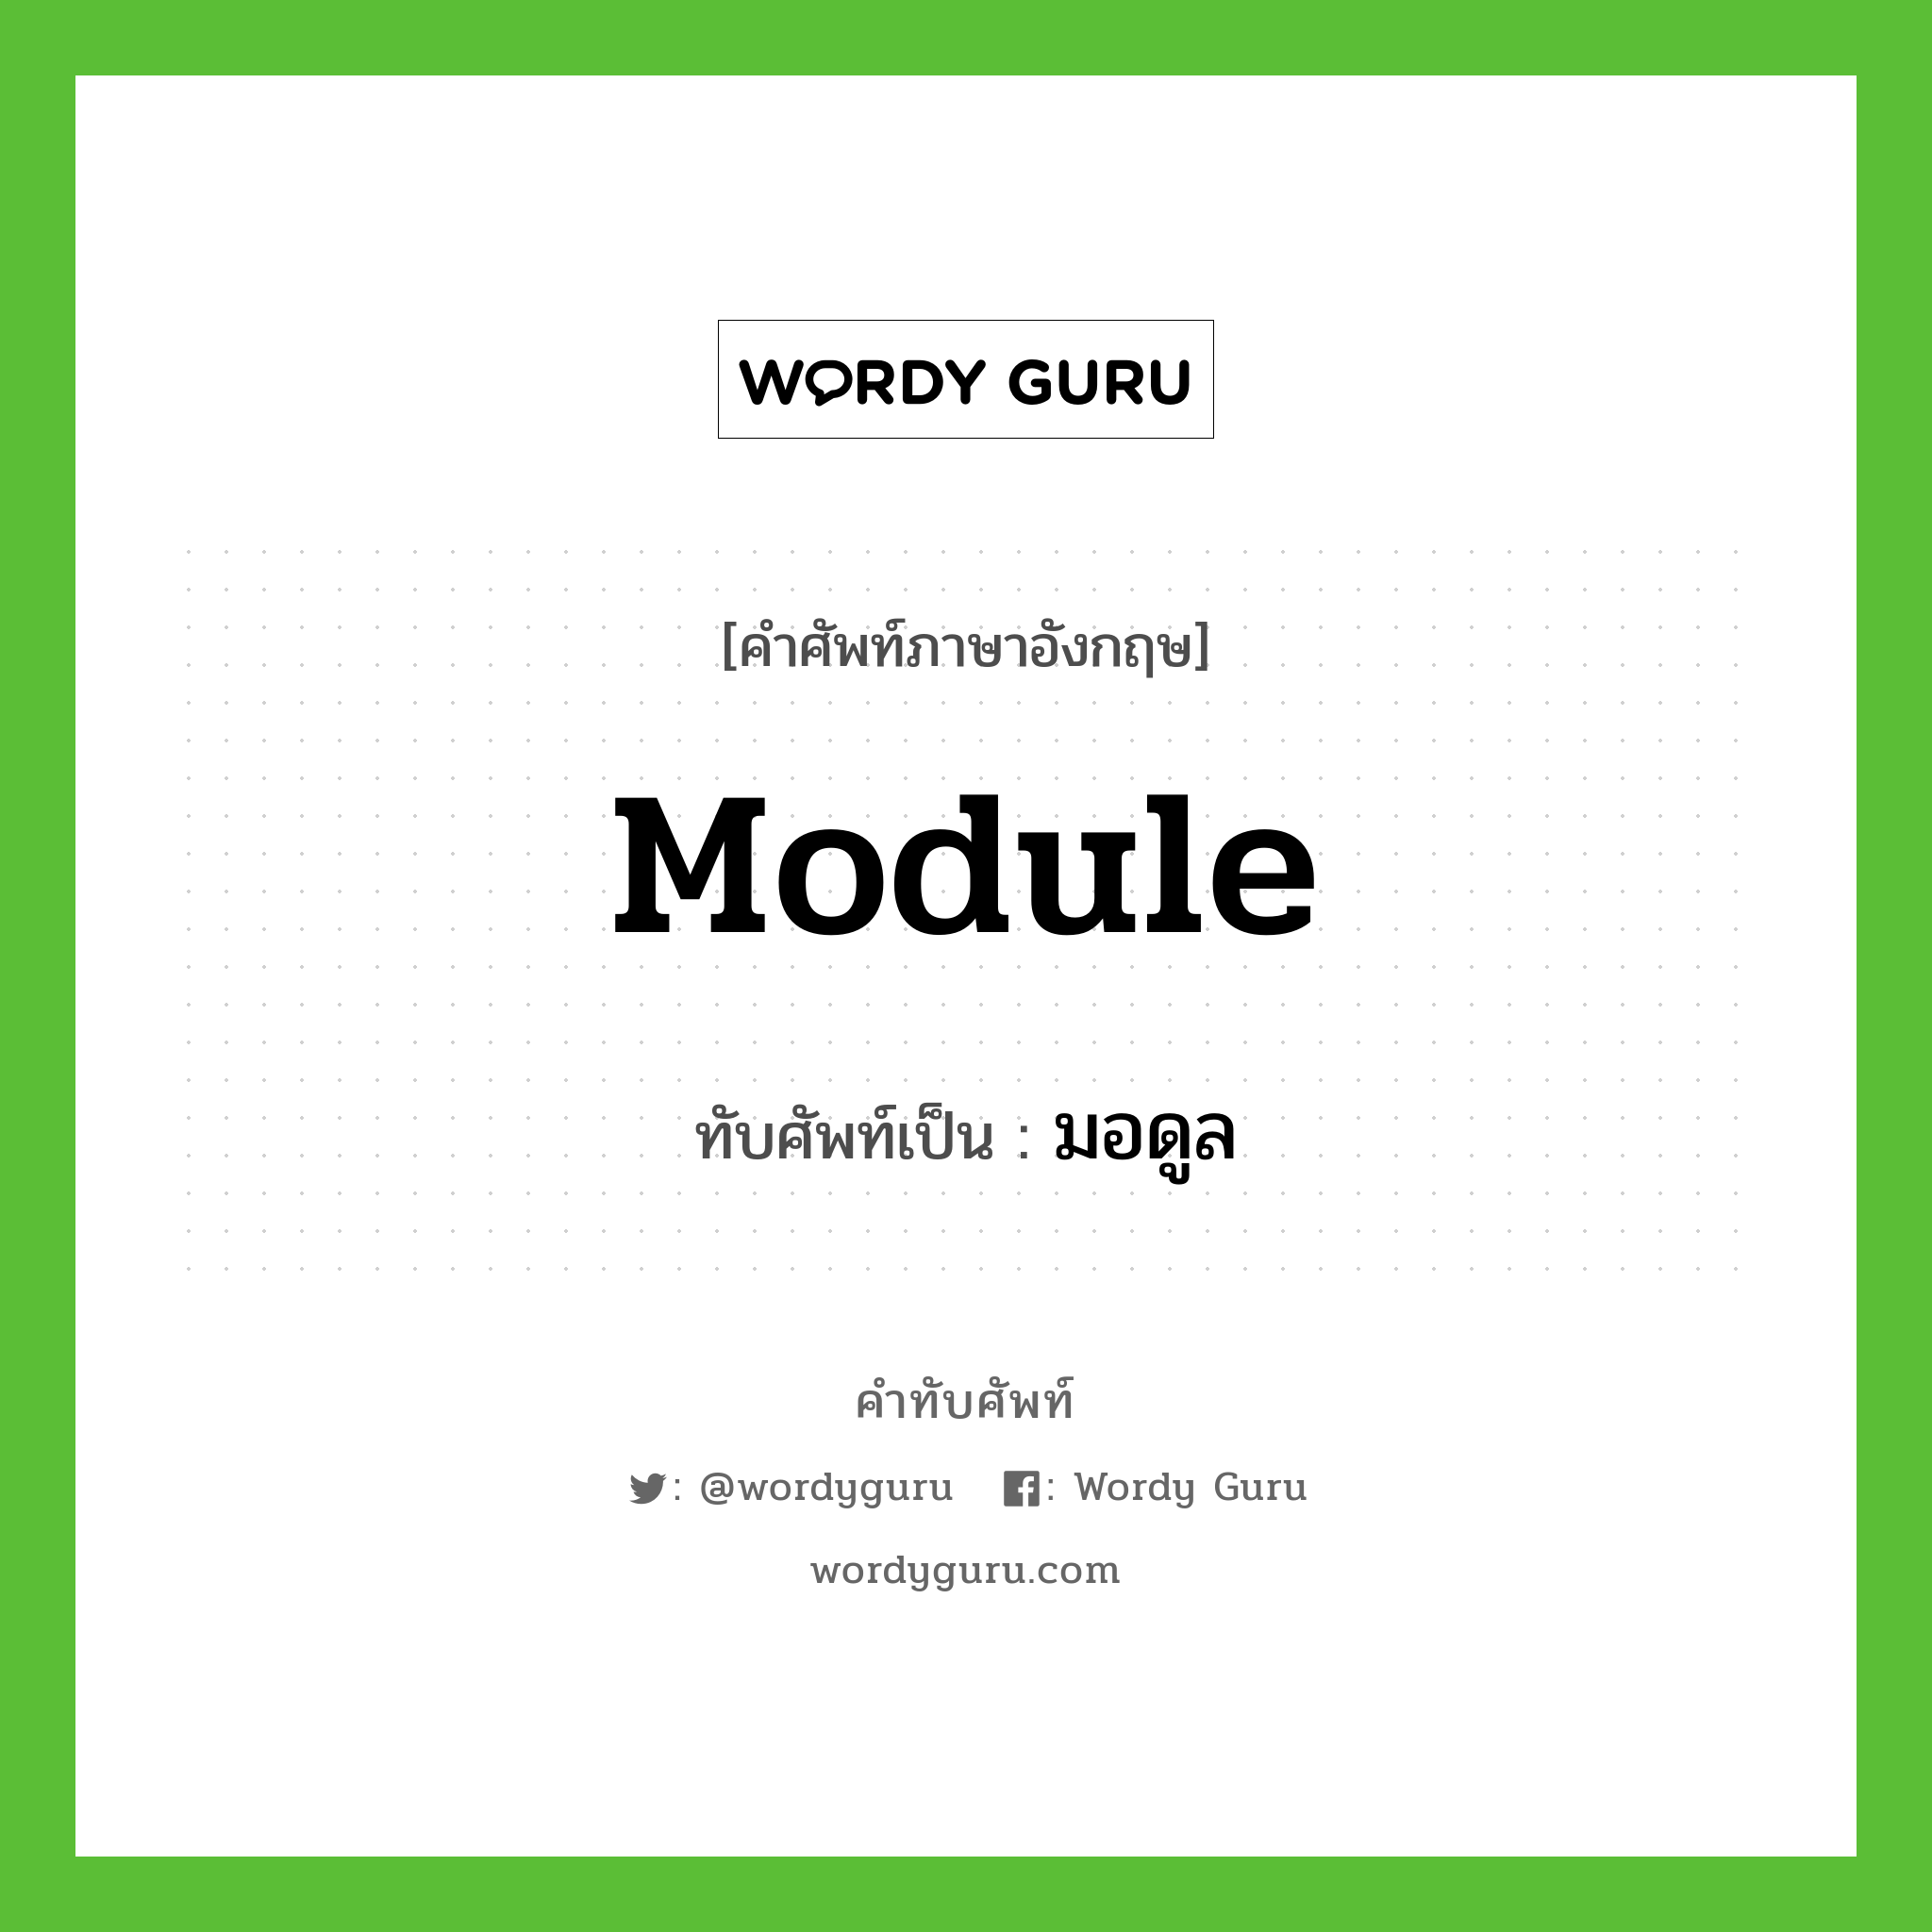 module เขียนเป็นคำไทยว่าอะไร?, คำศัพท์ภาษาอังกฤษ module ทับศัพท์เป็น มอดูล